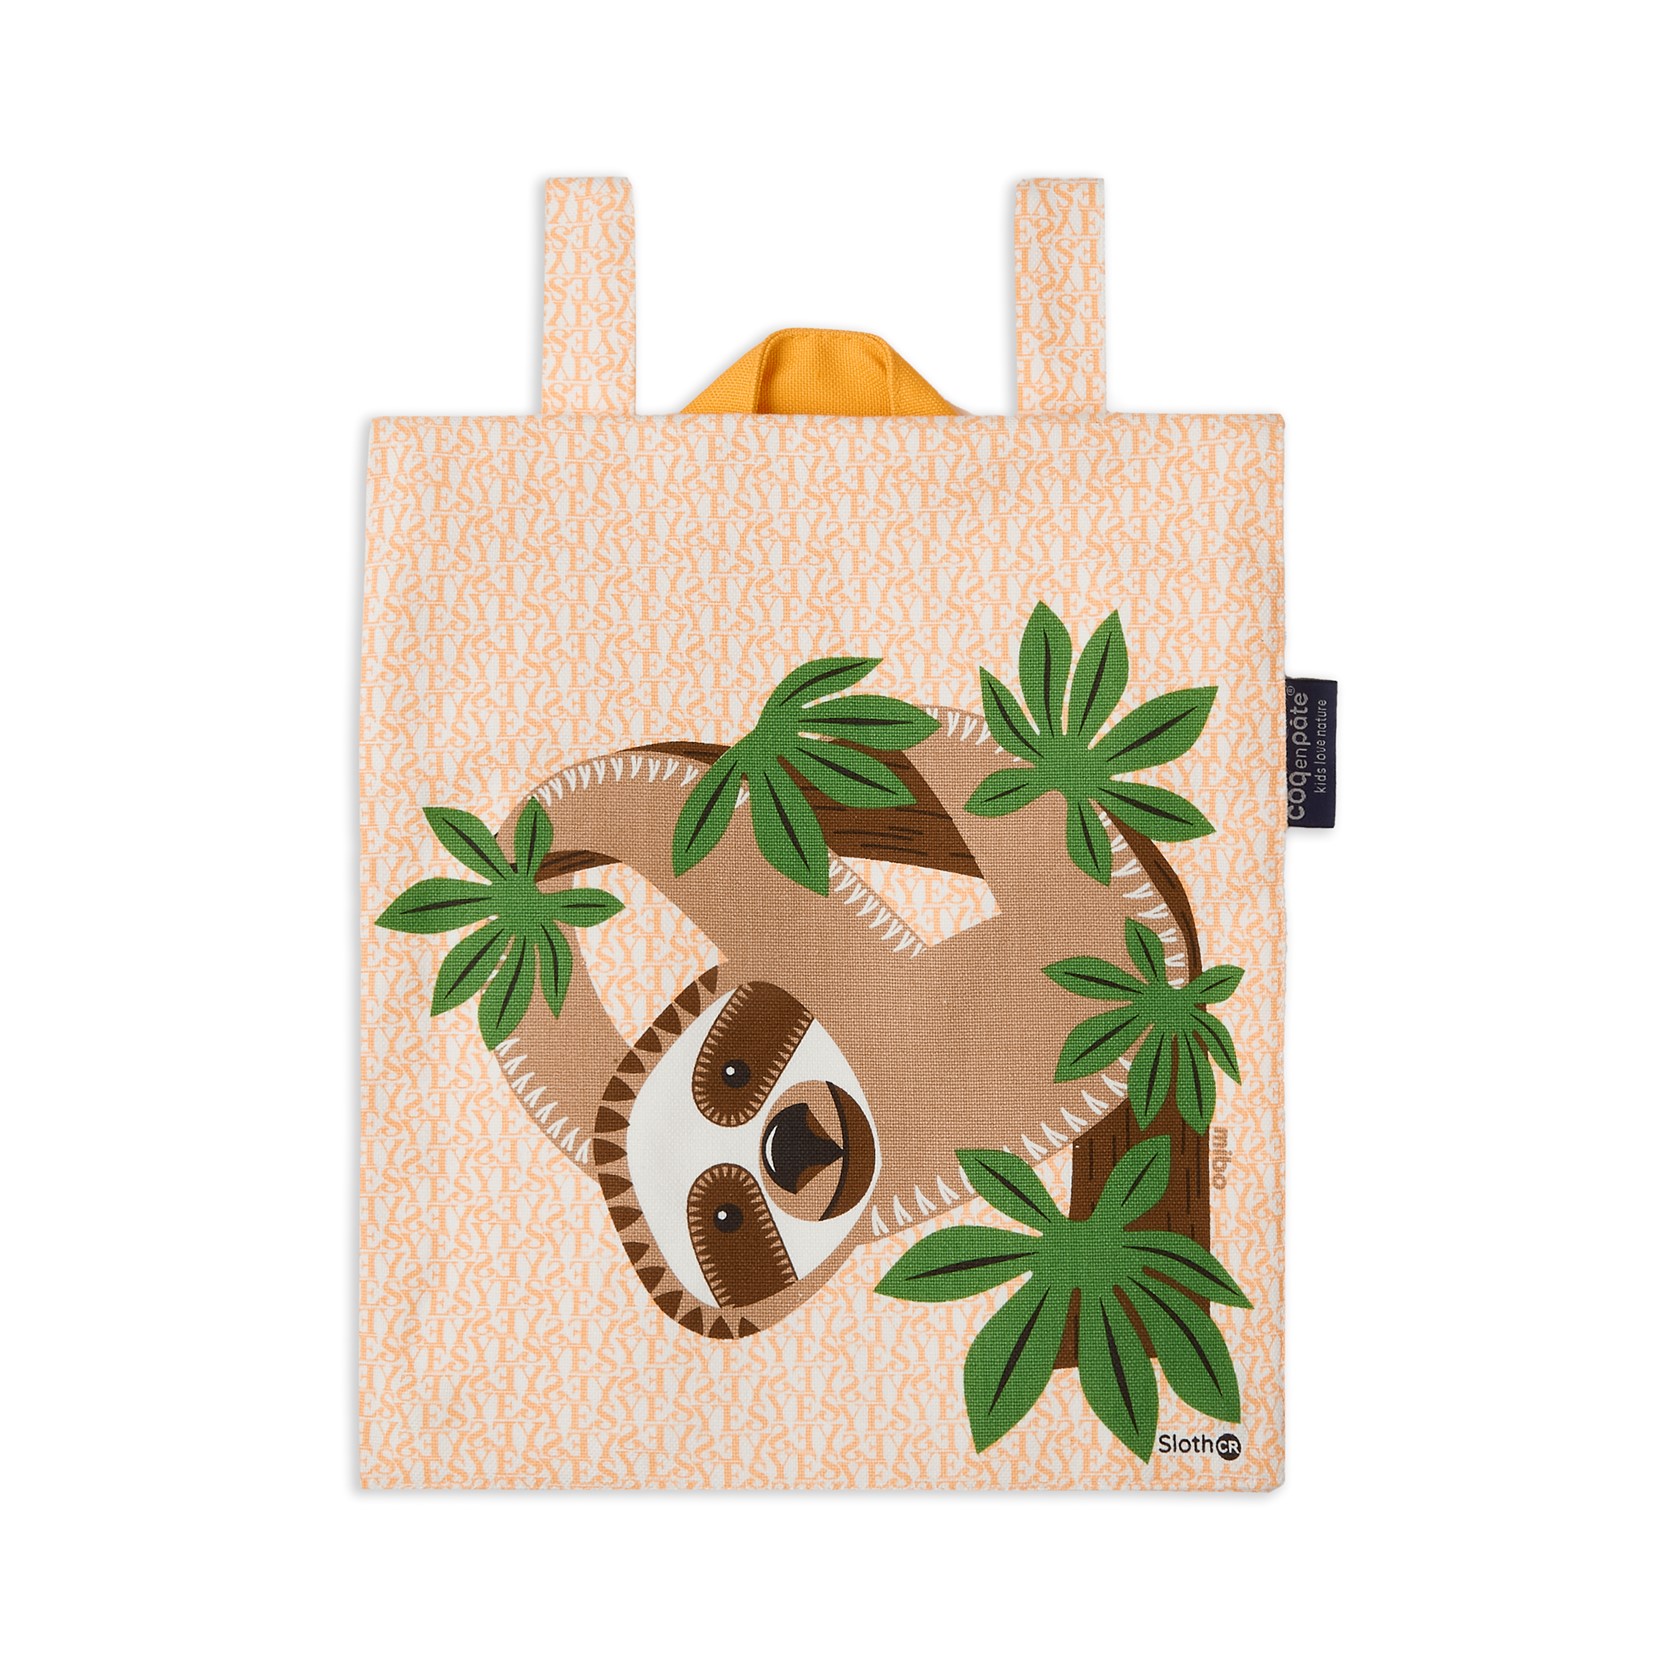 Coq en Pate Sloth Backpack